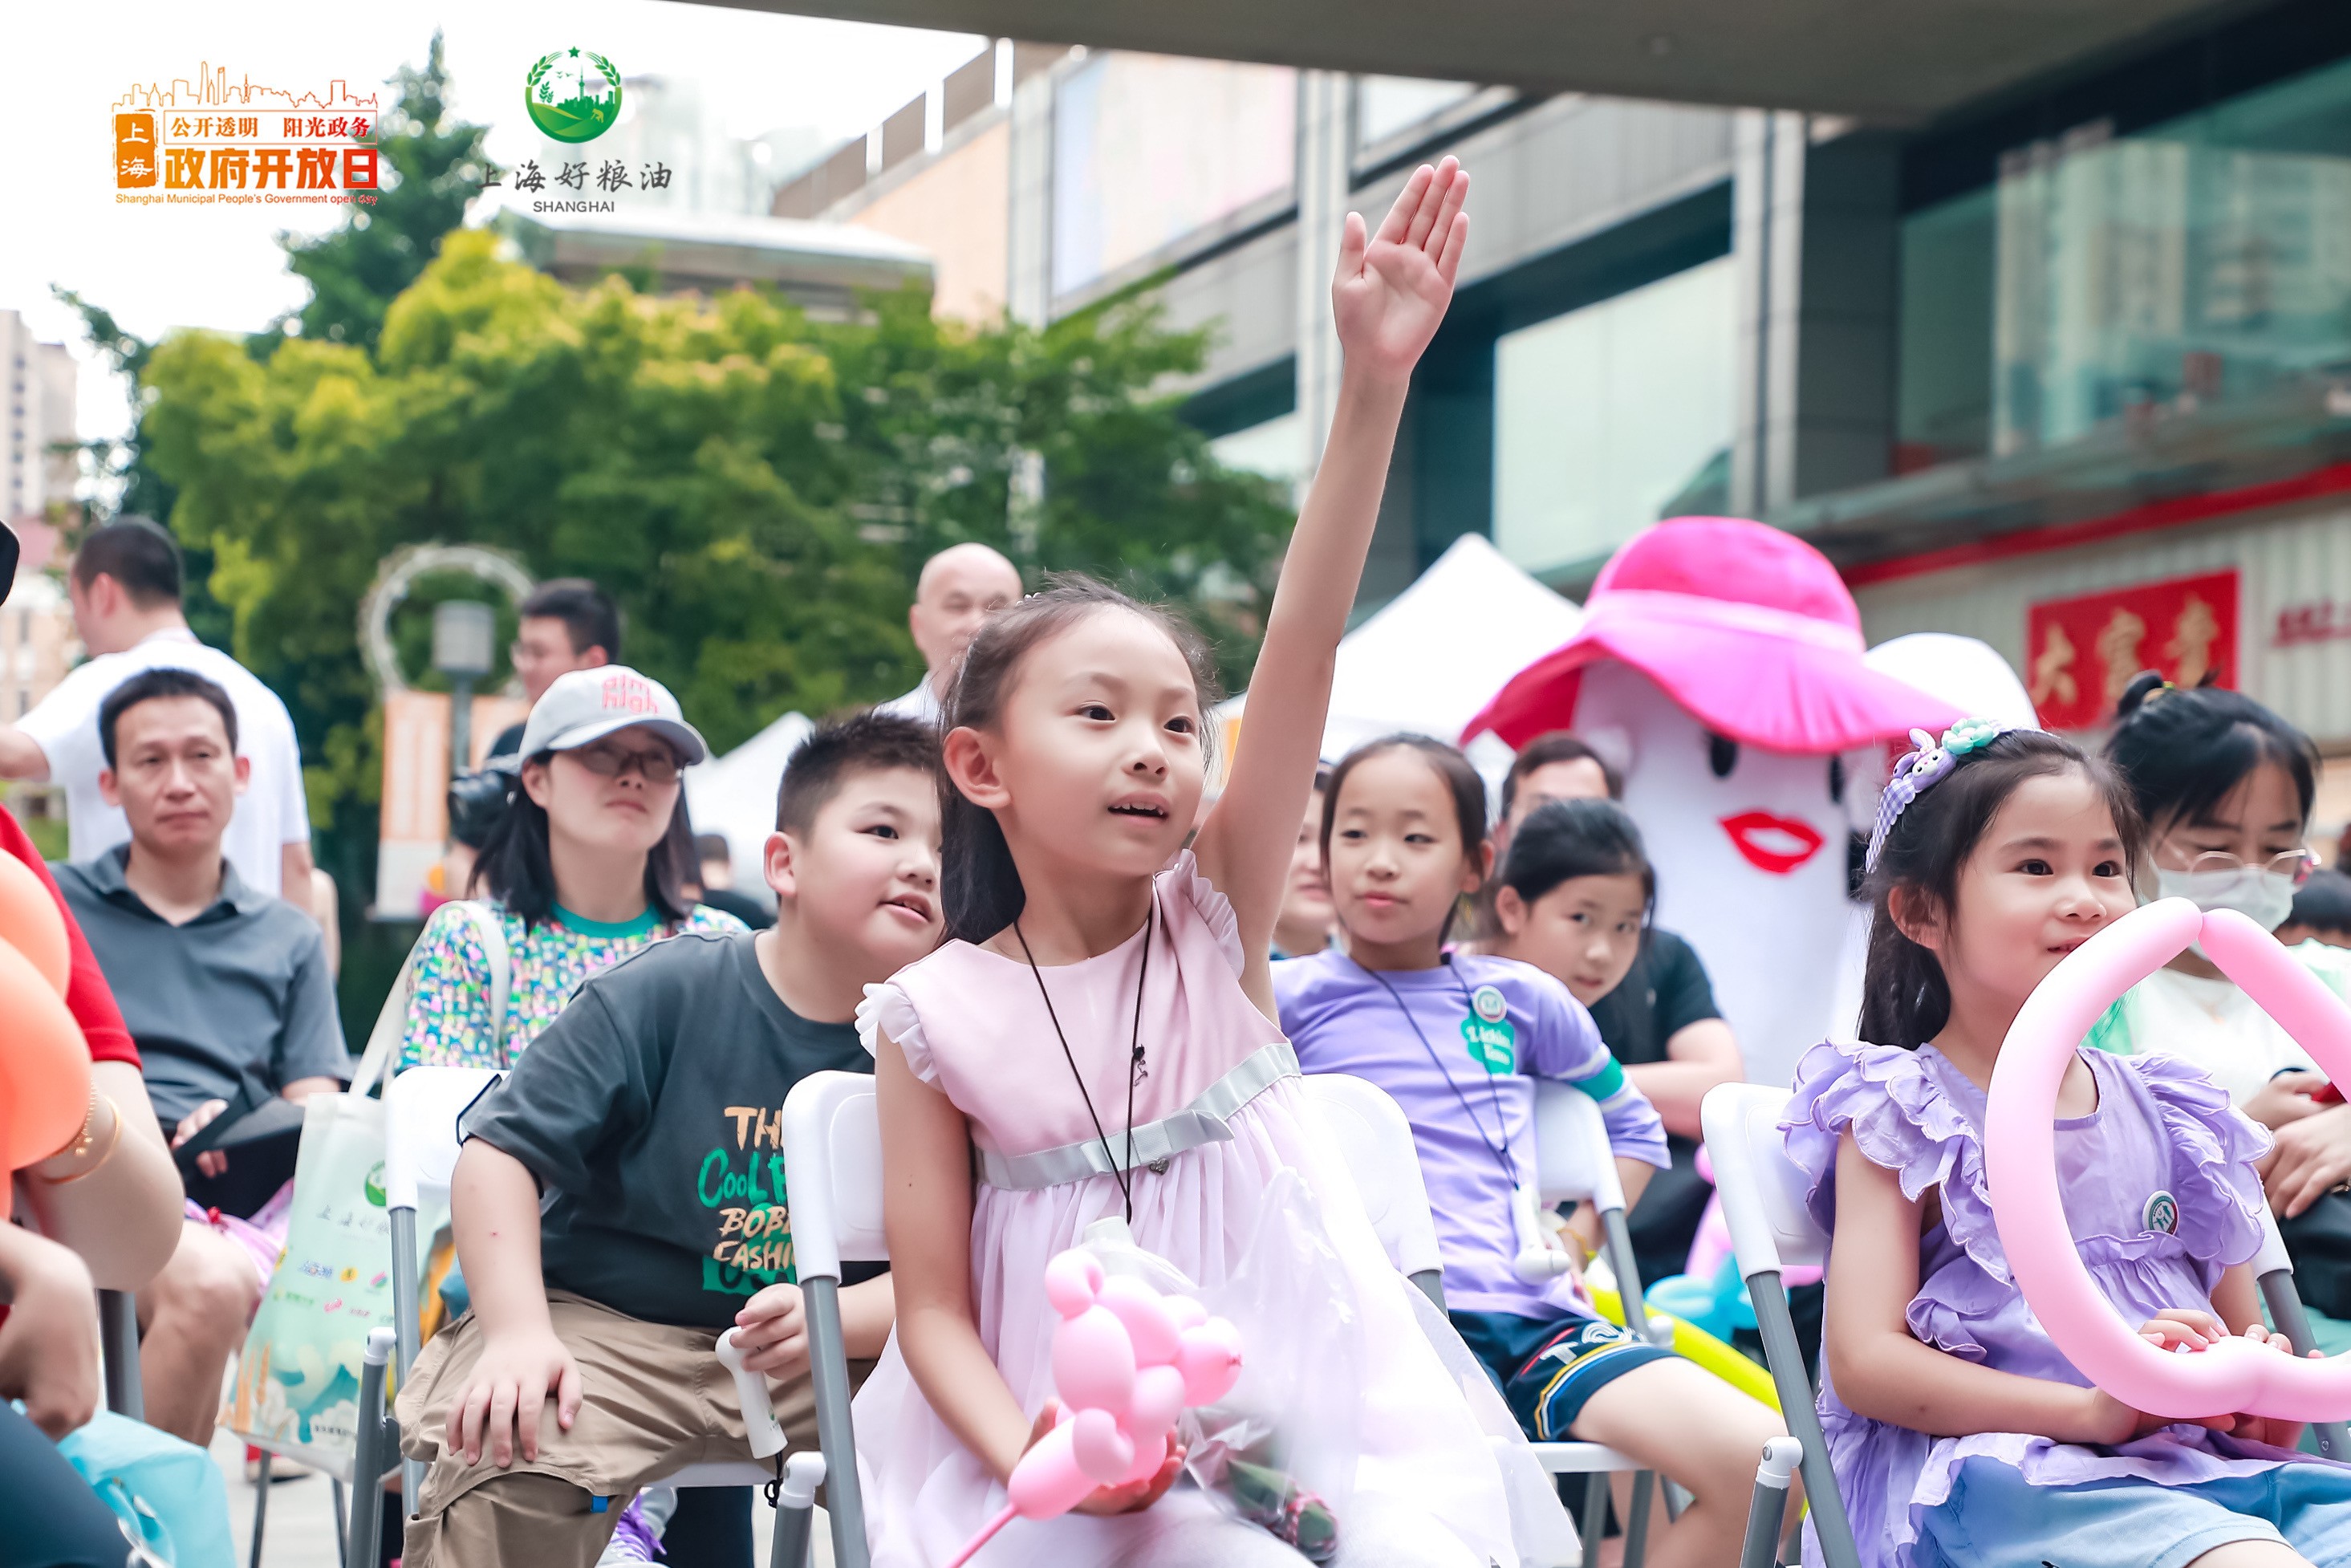 全力满足市民舌尖上的期待  上海好粮油鲜水果社区巡展启动